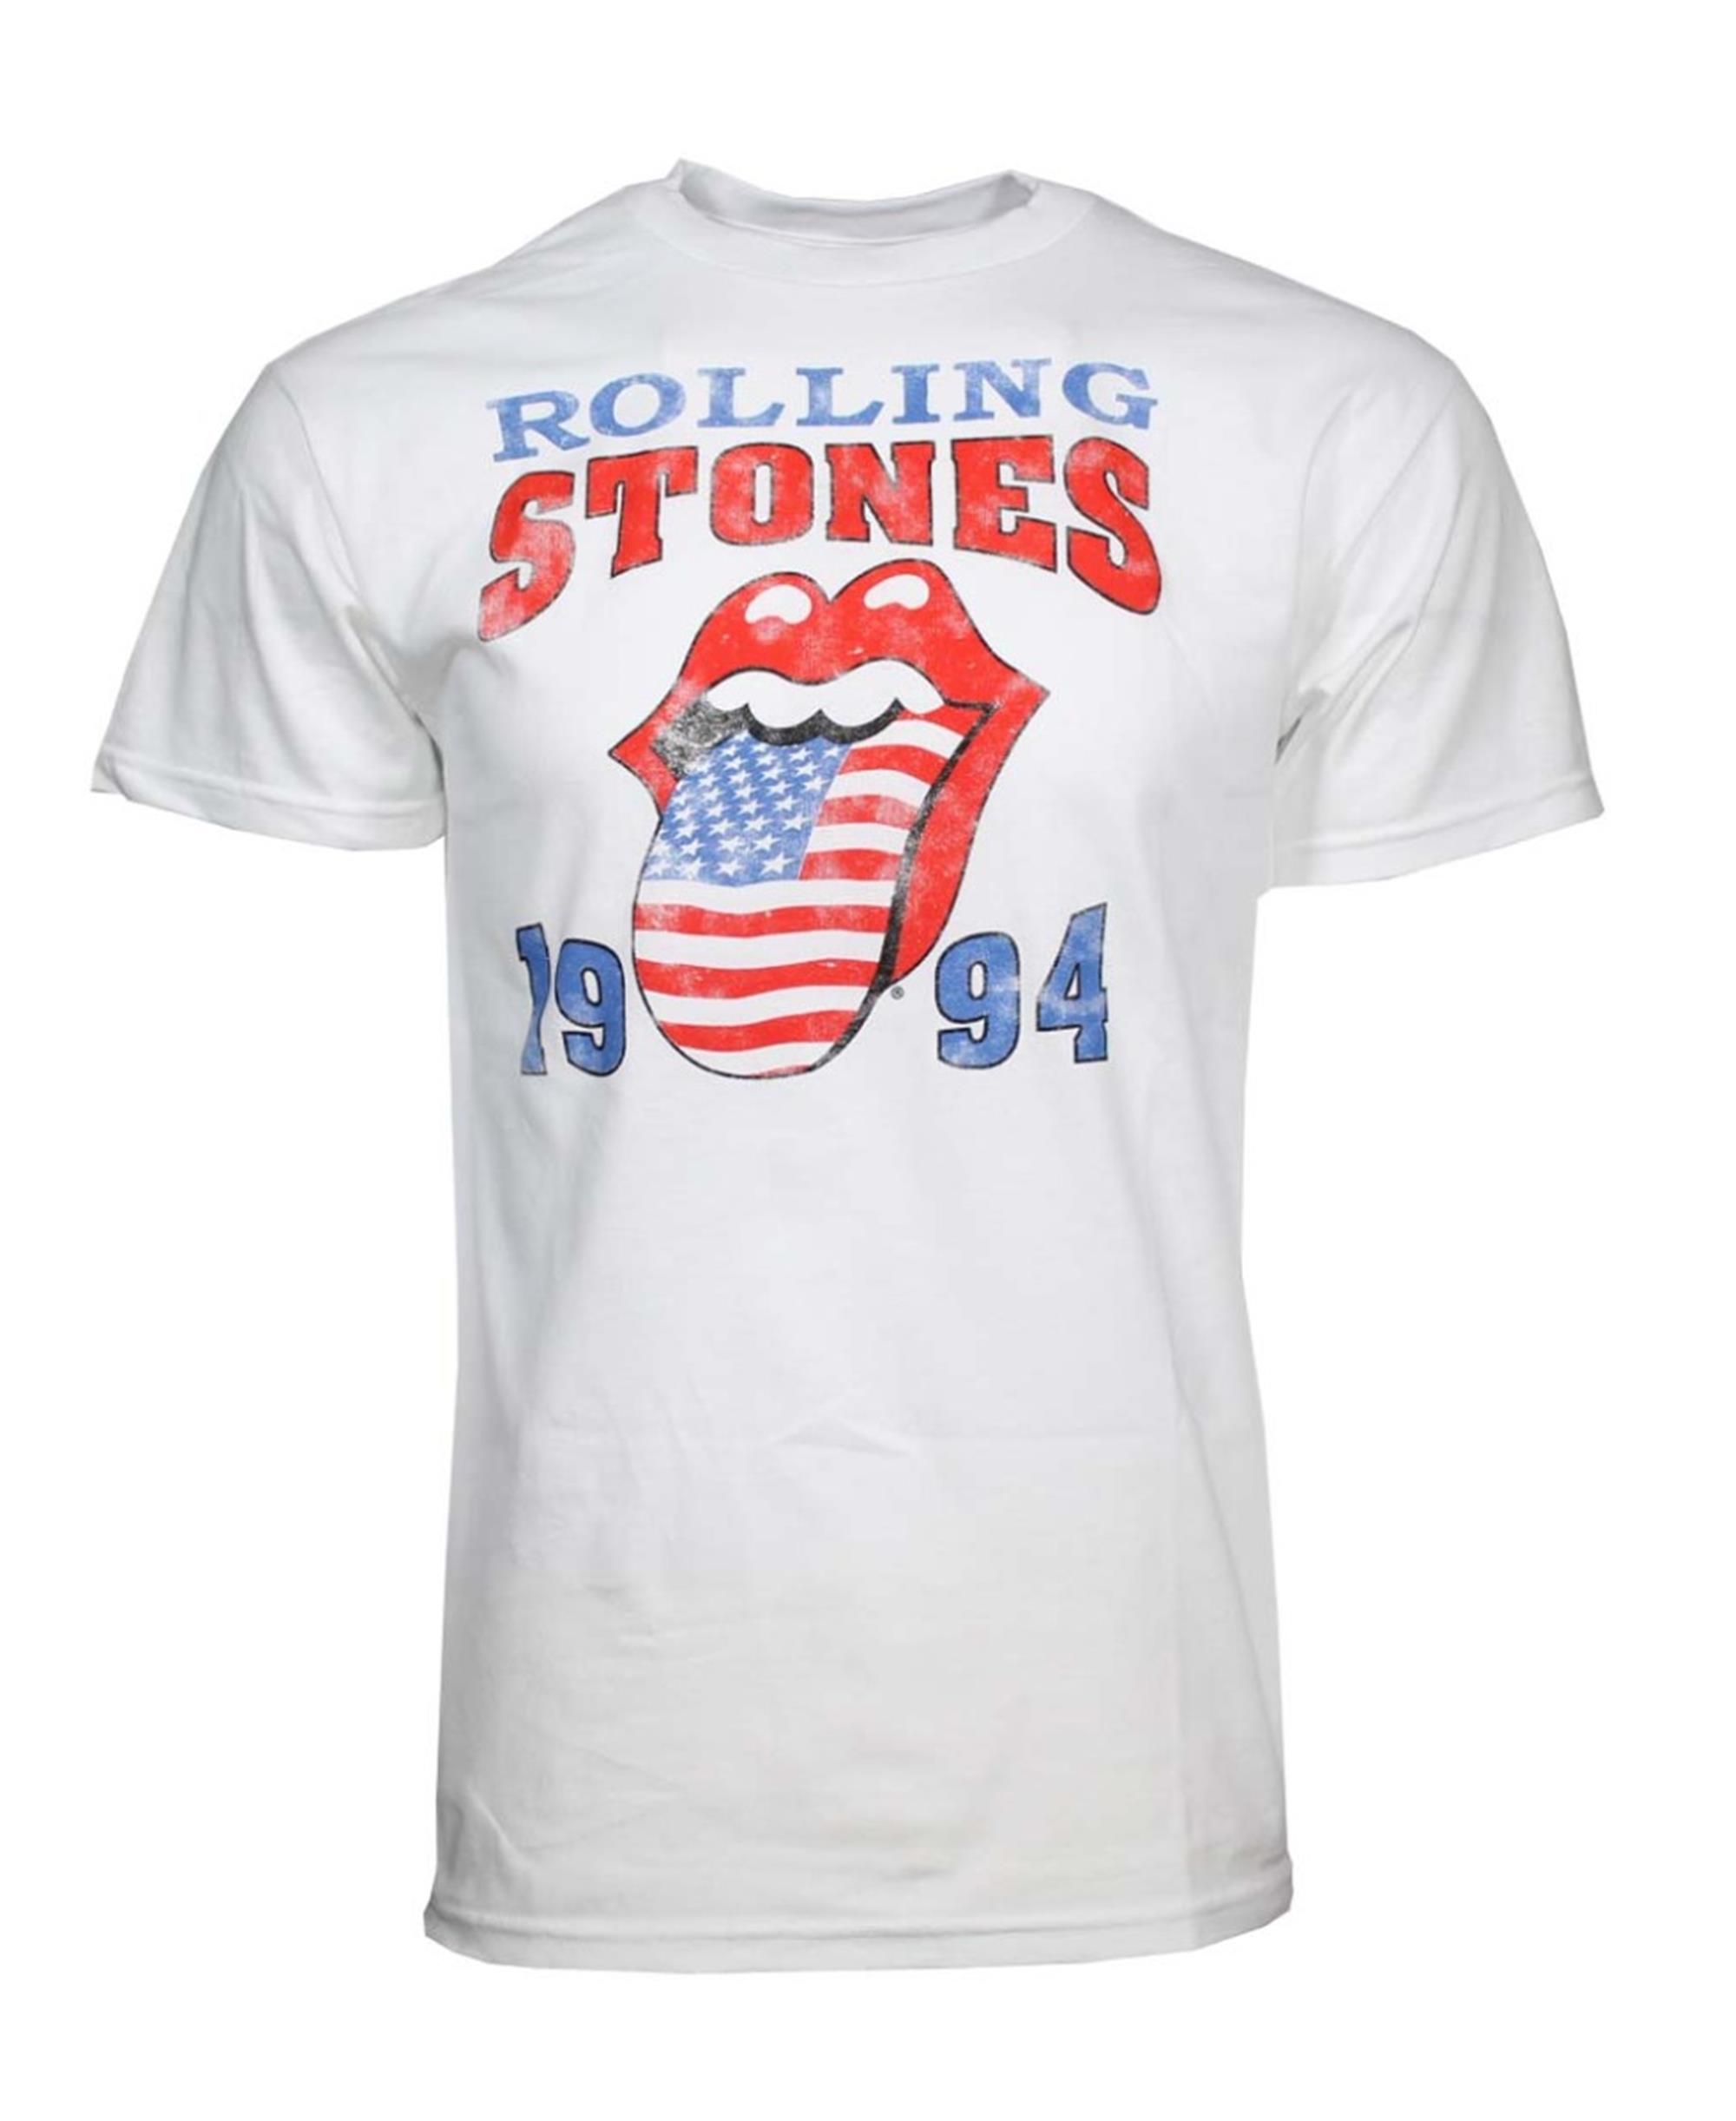 Rolling Stones 1994 Tour T-Shirt